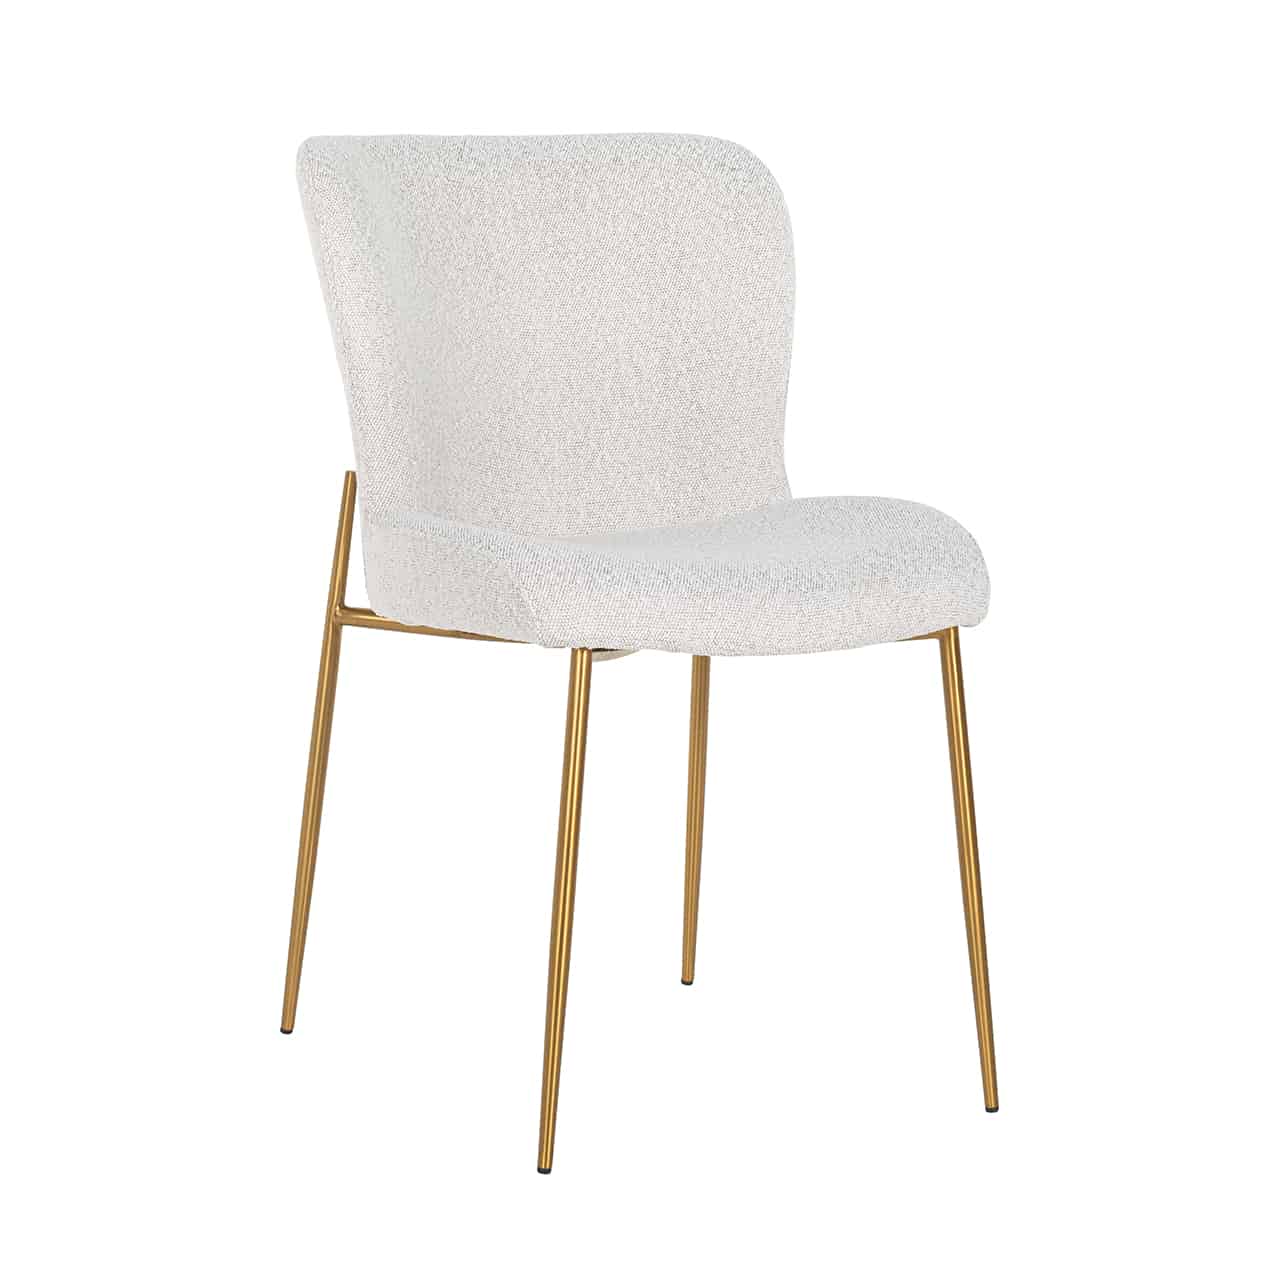 Vollpolsterstuhl mit einem Bezug aus weißem Bouclé; auf einem goldenen Gestell mit dünnen Beinen, darauf eine leicht ergonomisch geformte Sitzschale ohne Armlehnen.